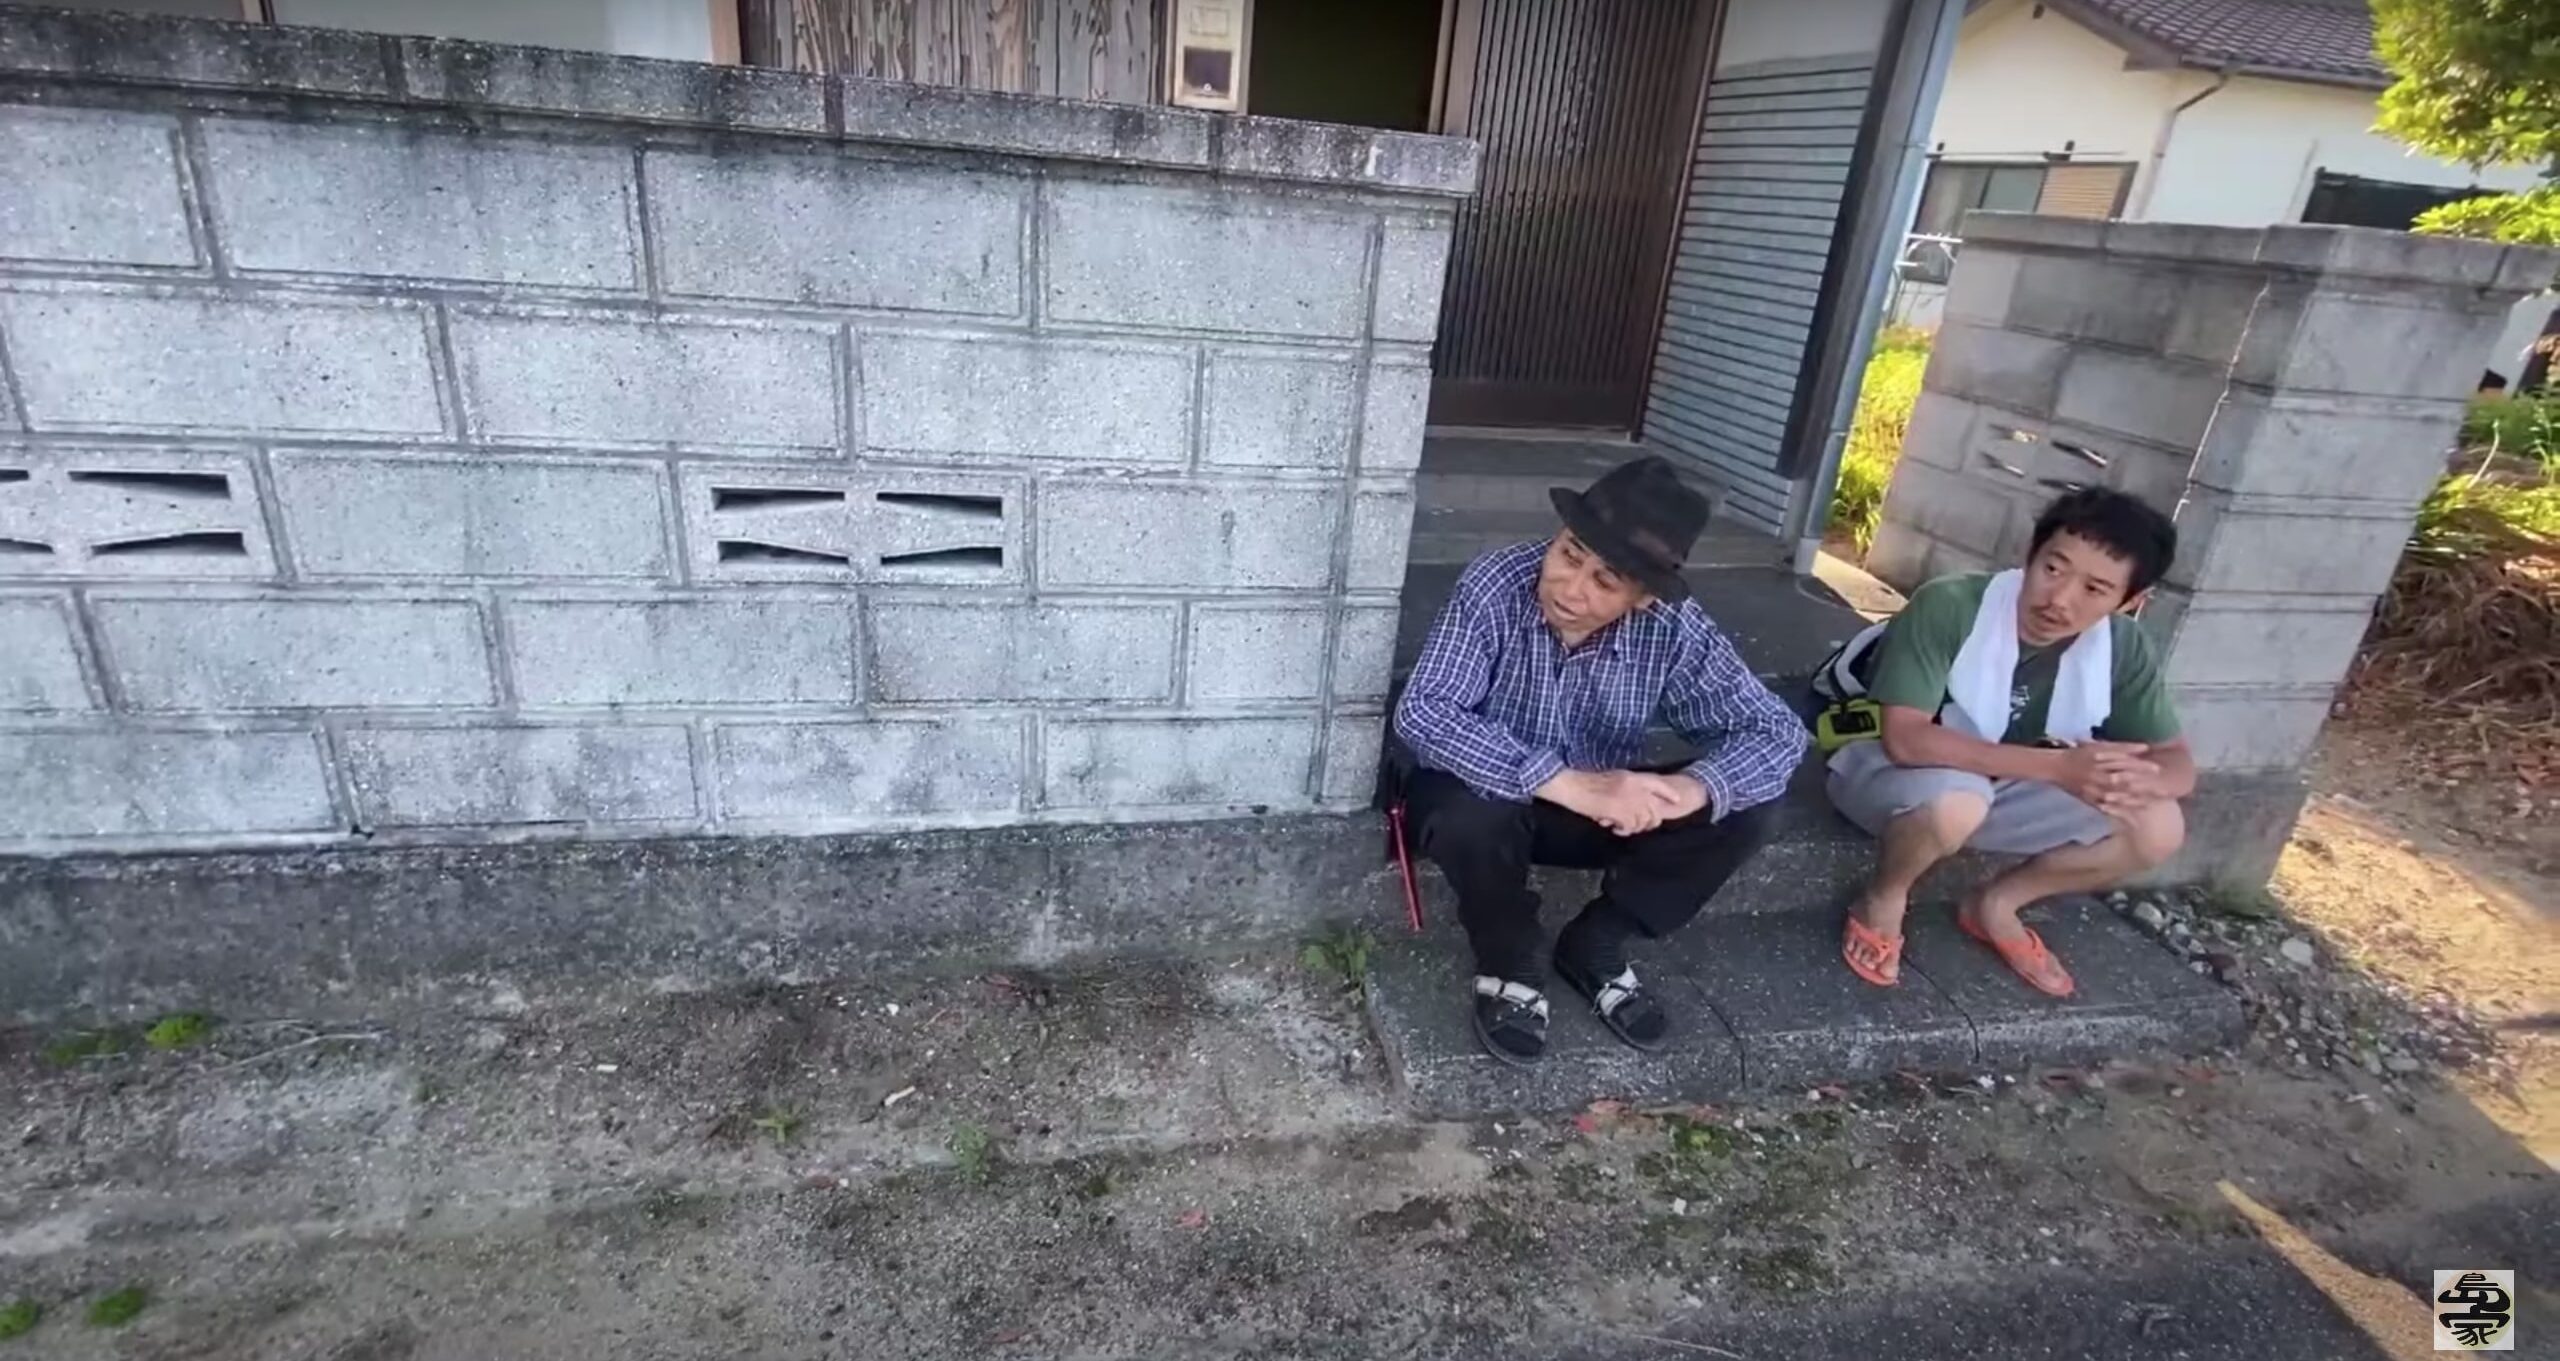 愛媛県松山沖にある忽那諸島の空き家を紹介する動画「離島の空き家」で紹介されている家の前が釣りスポット物件。